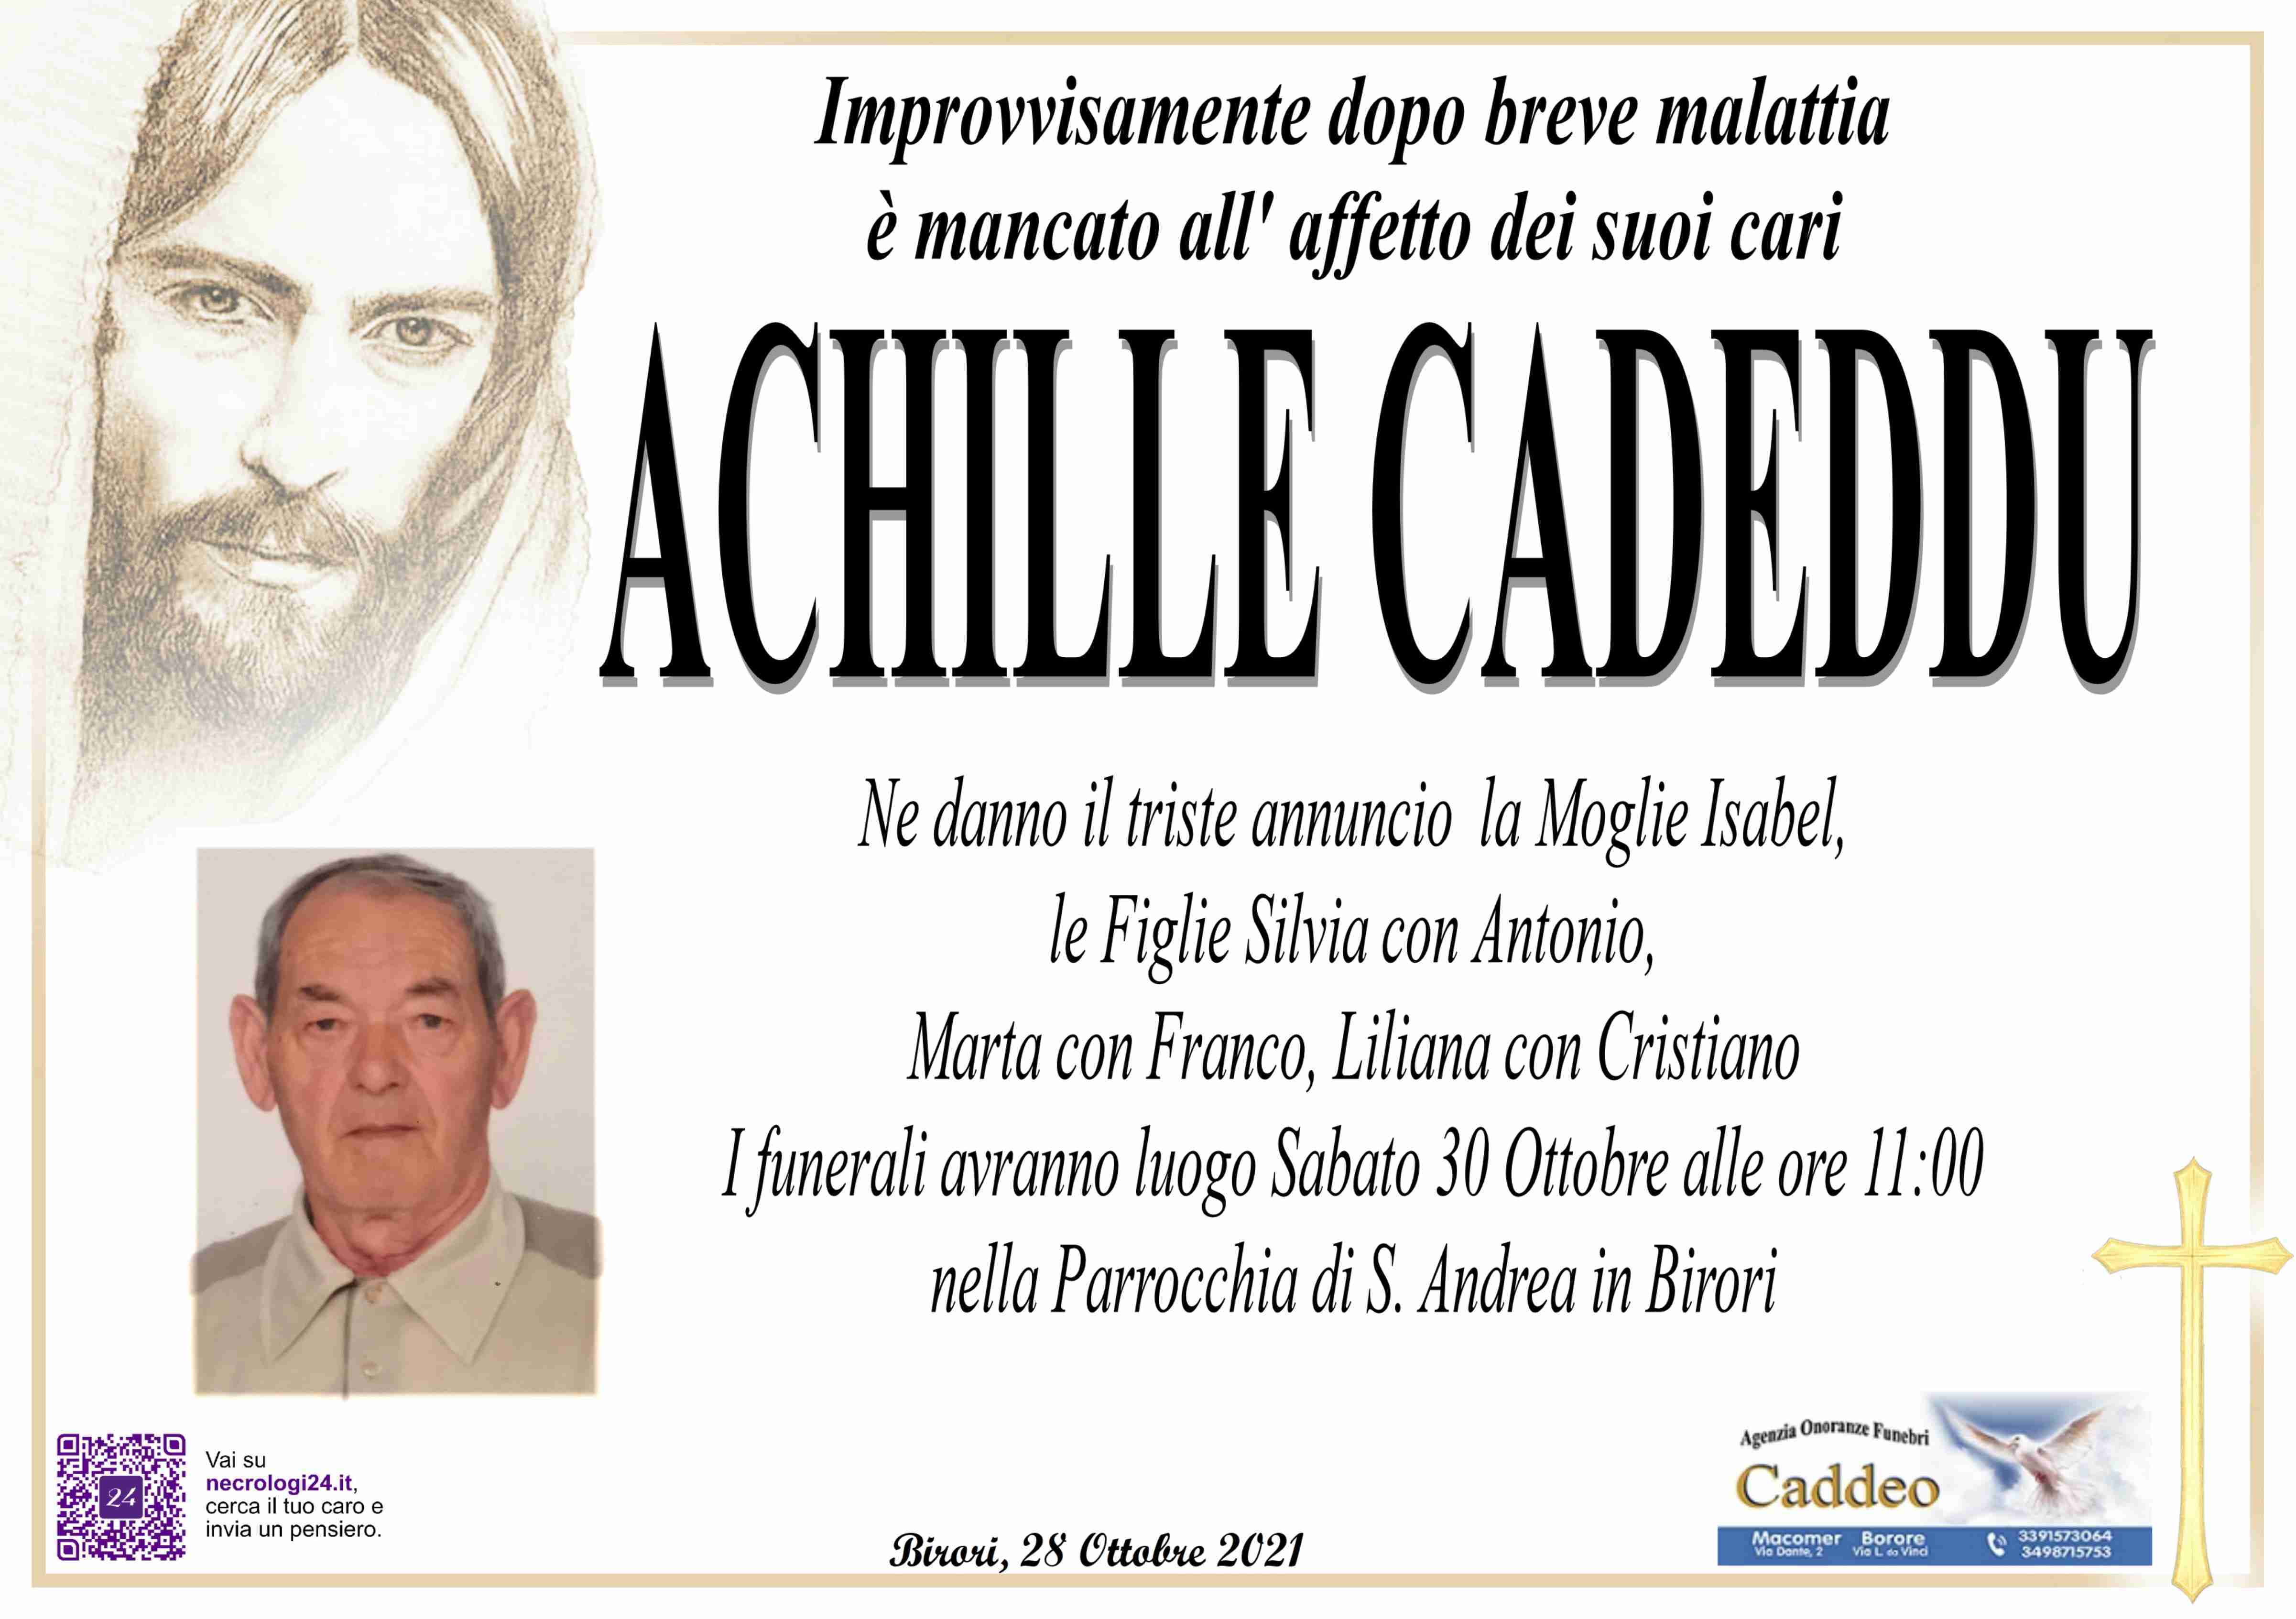 Achille Cadeddu